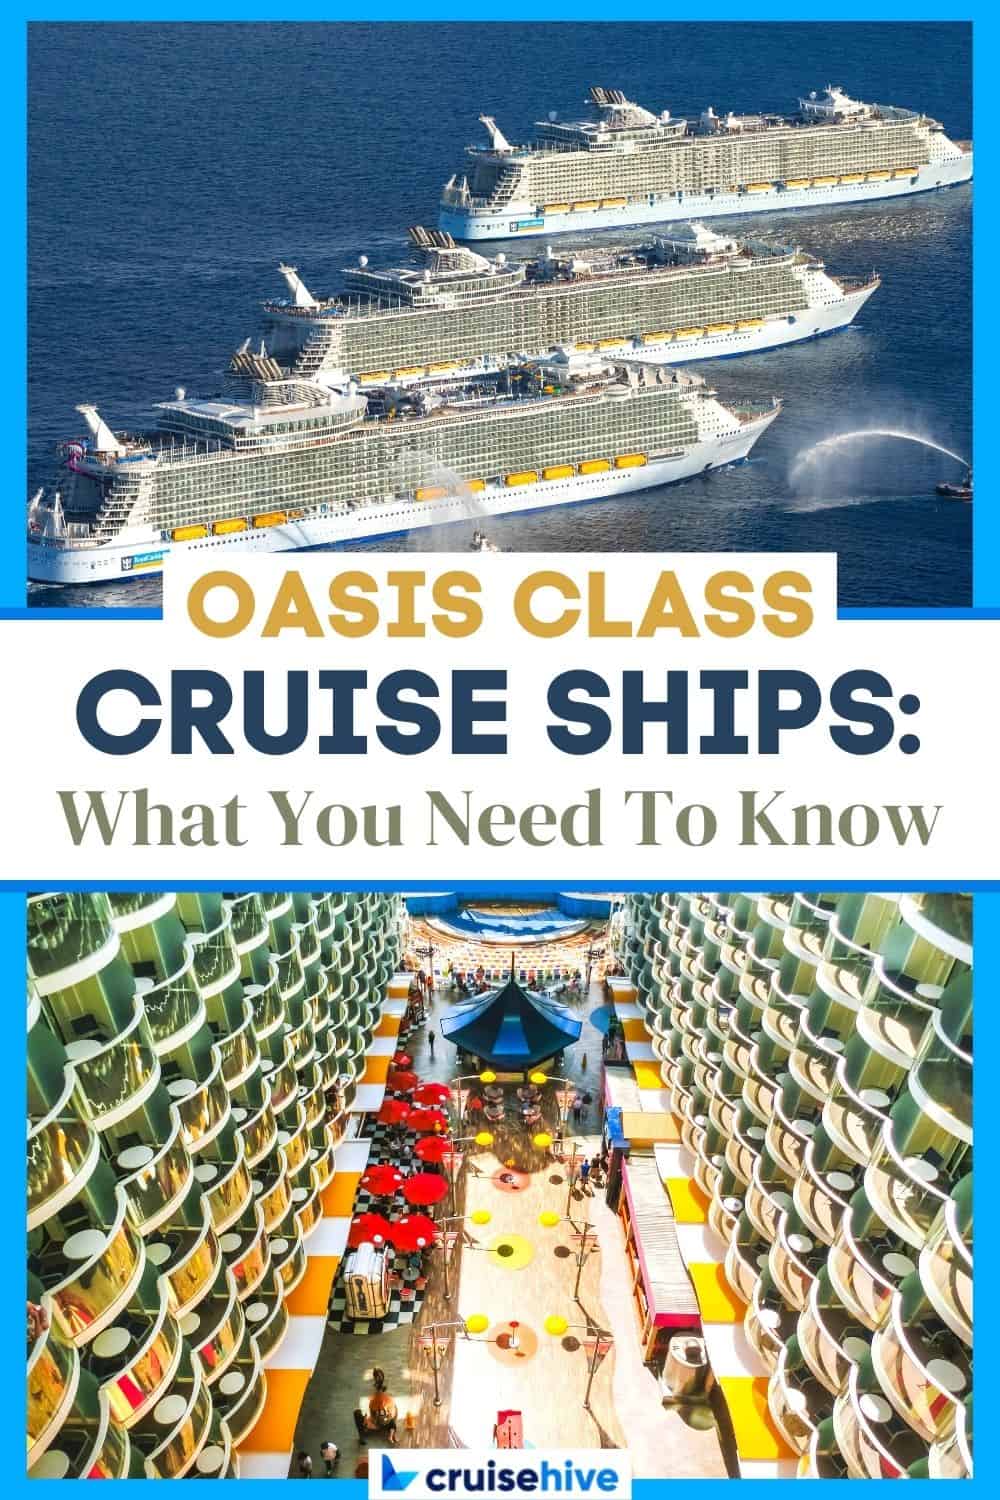 Oasis class cruise ships